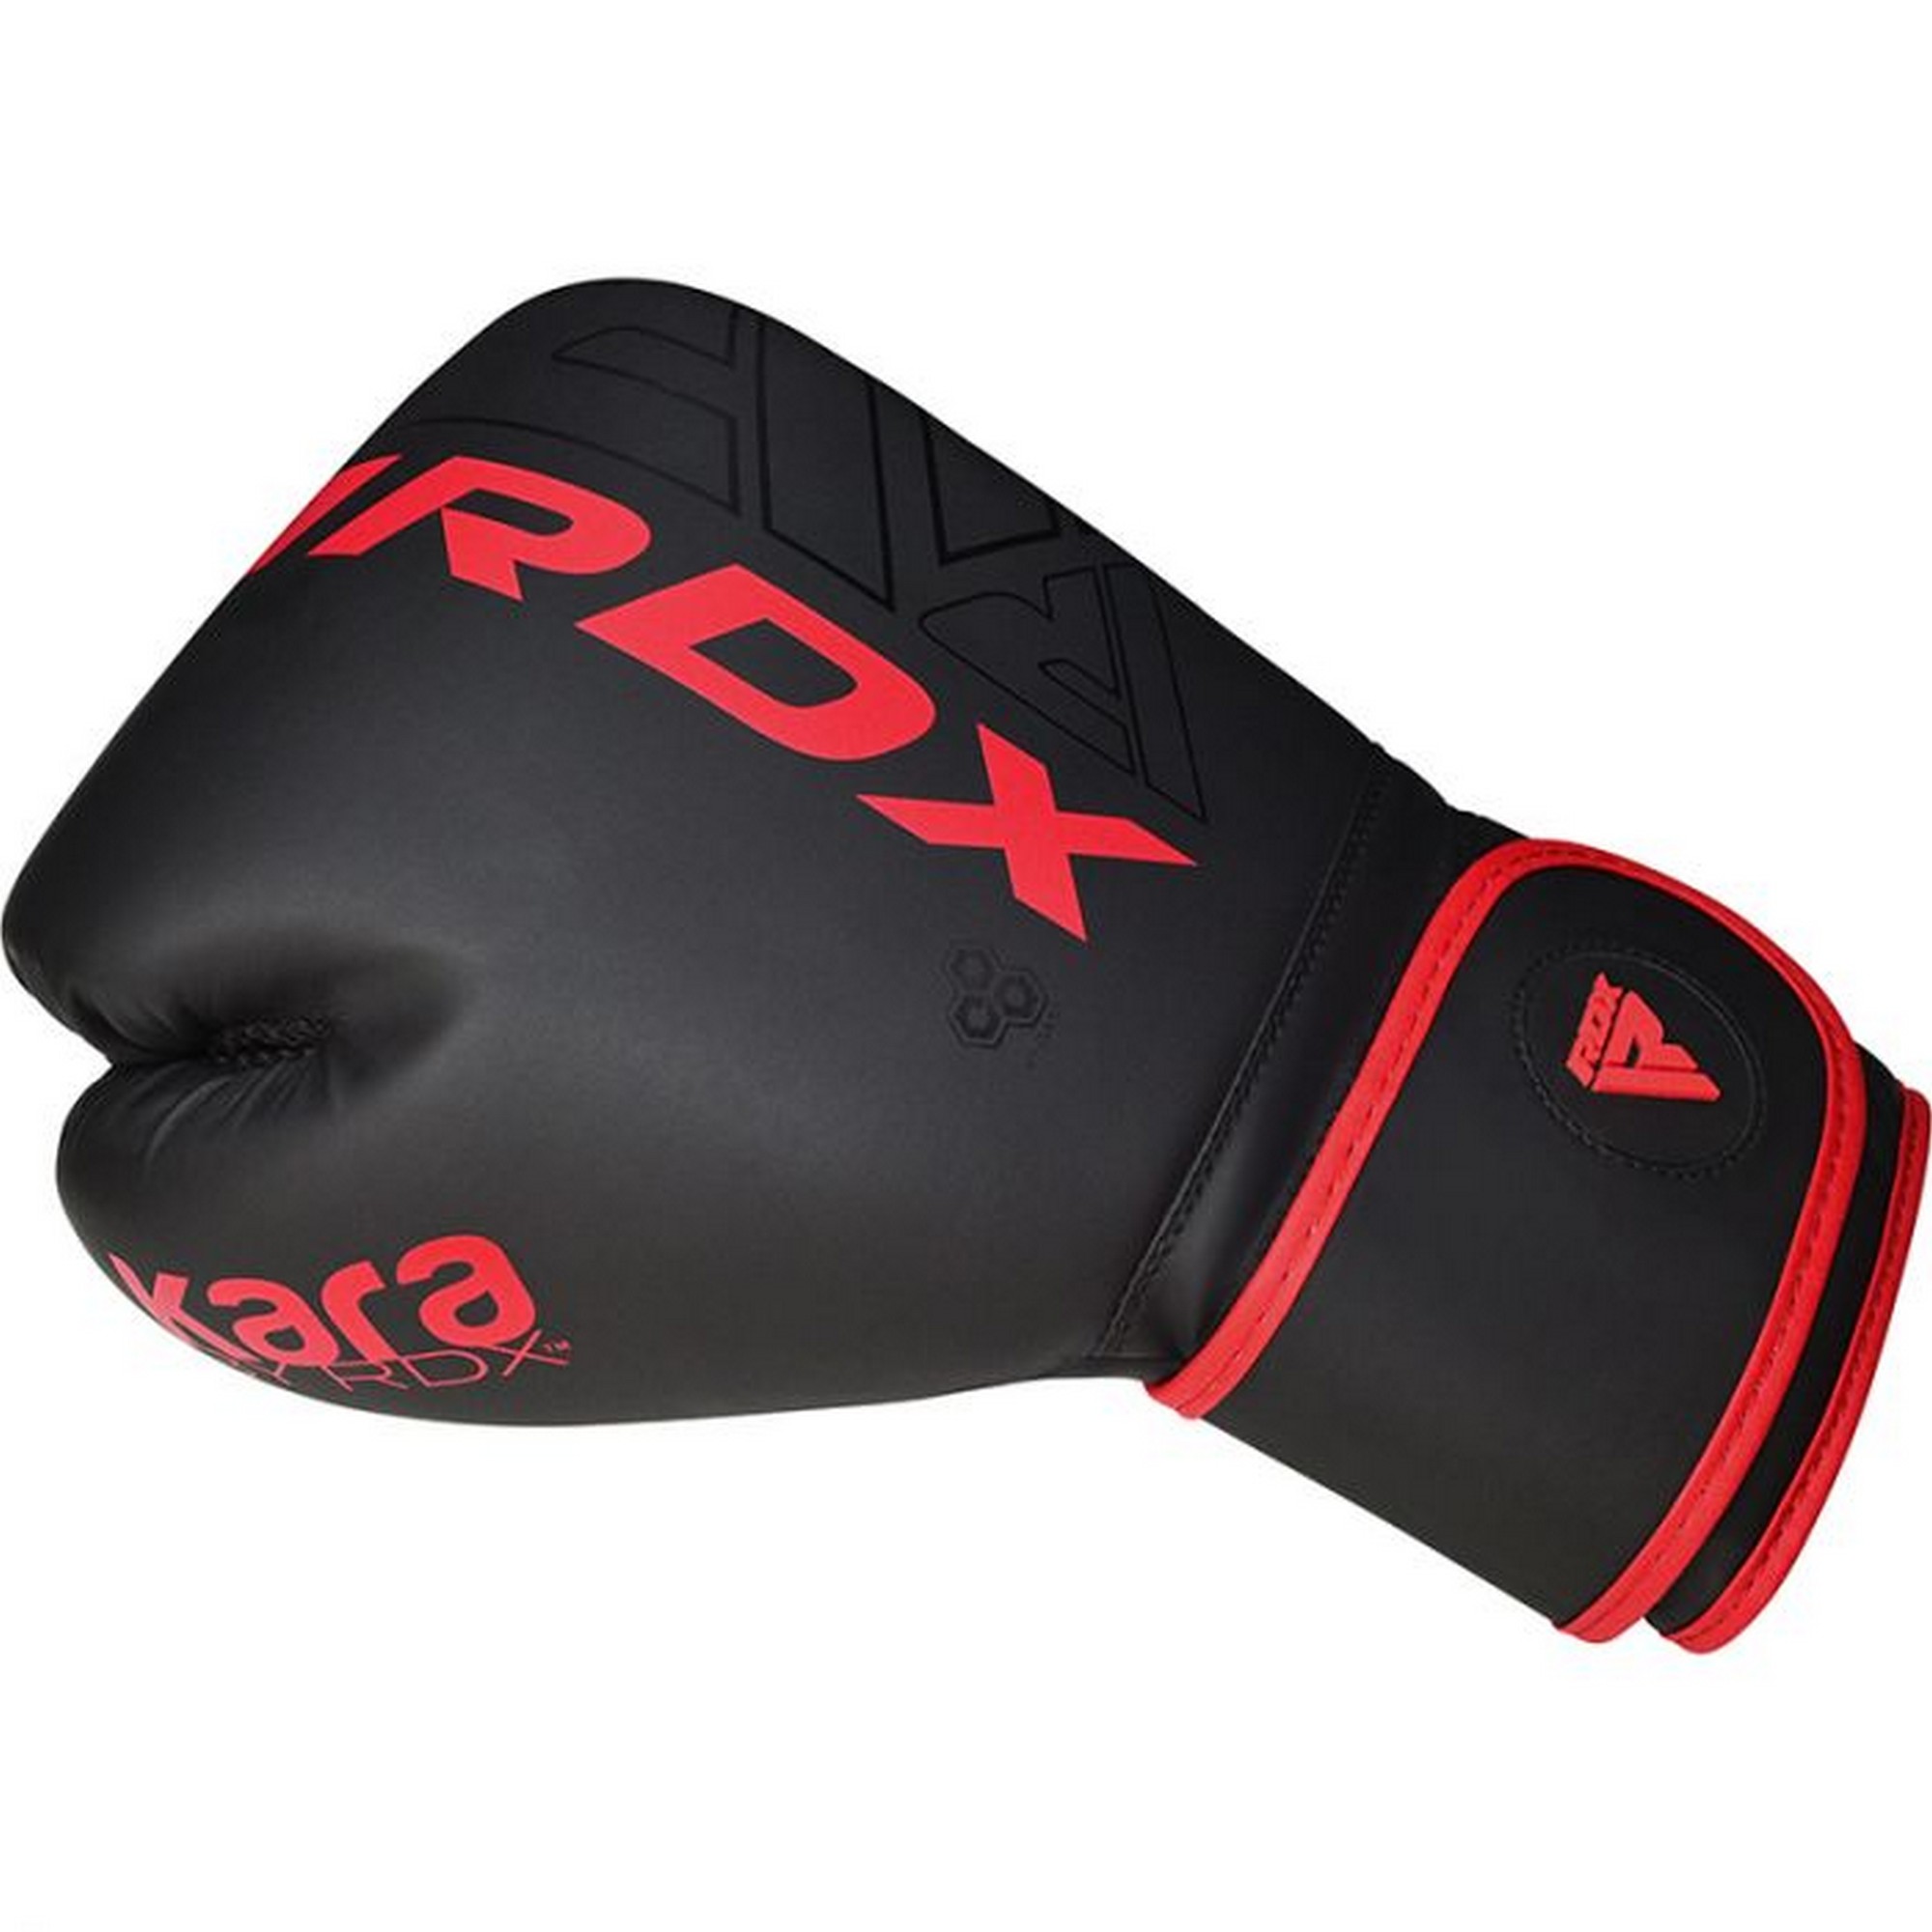 Перчатки тренировочные RDX BGR-F6MR-16OZ черный\красный матовый 2000_2000